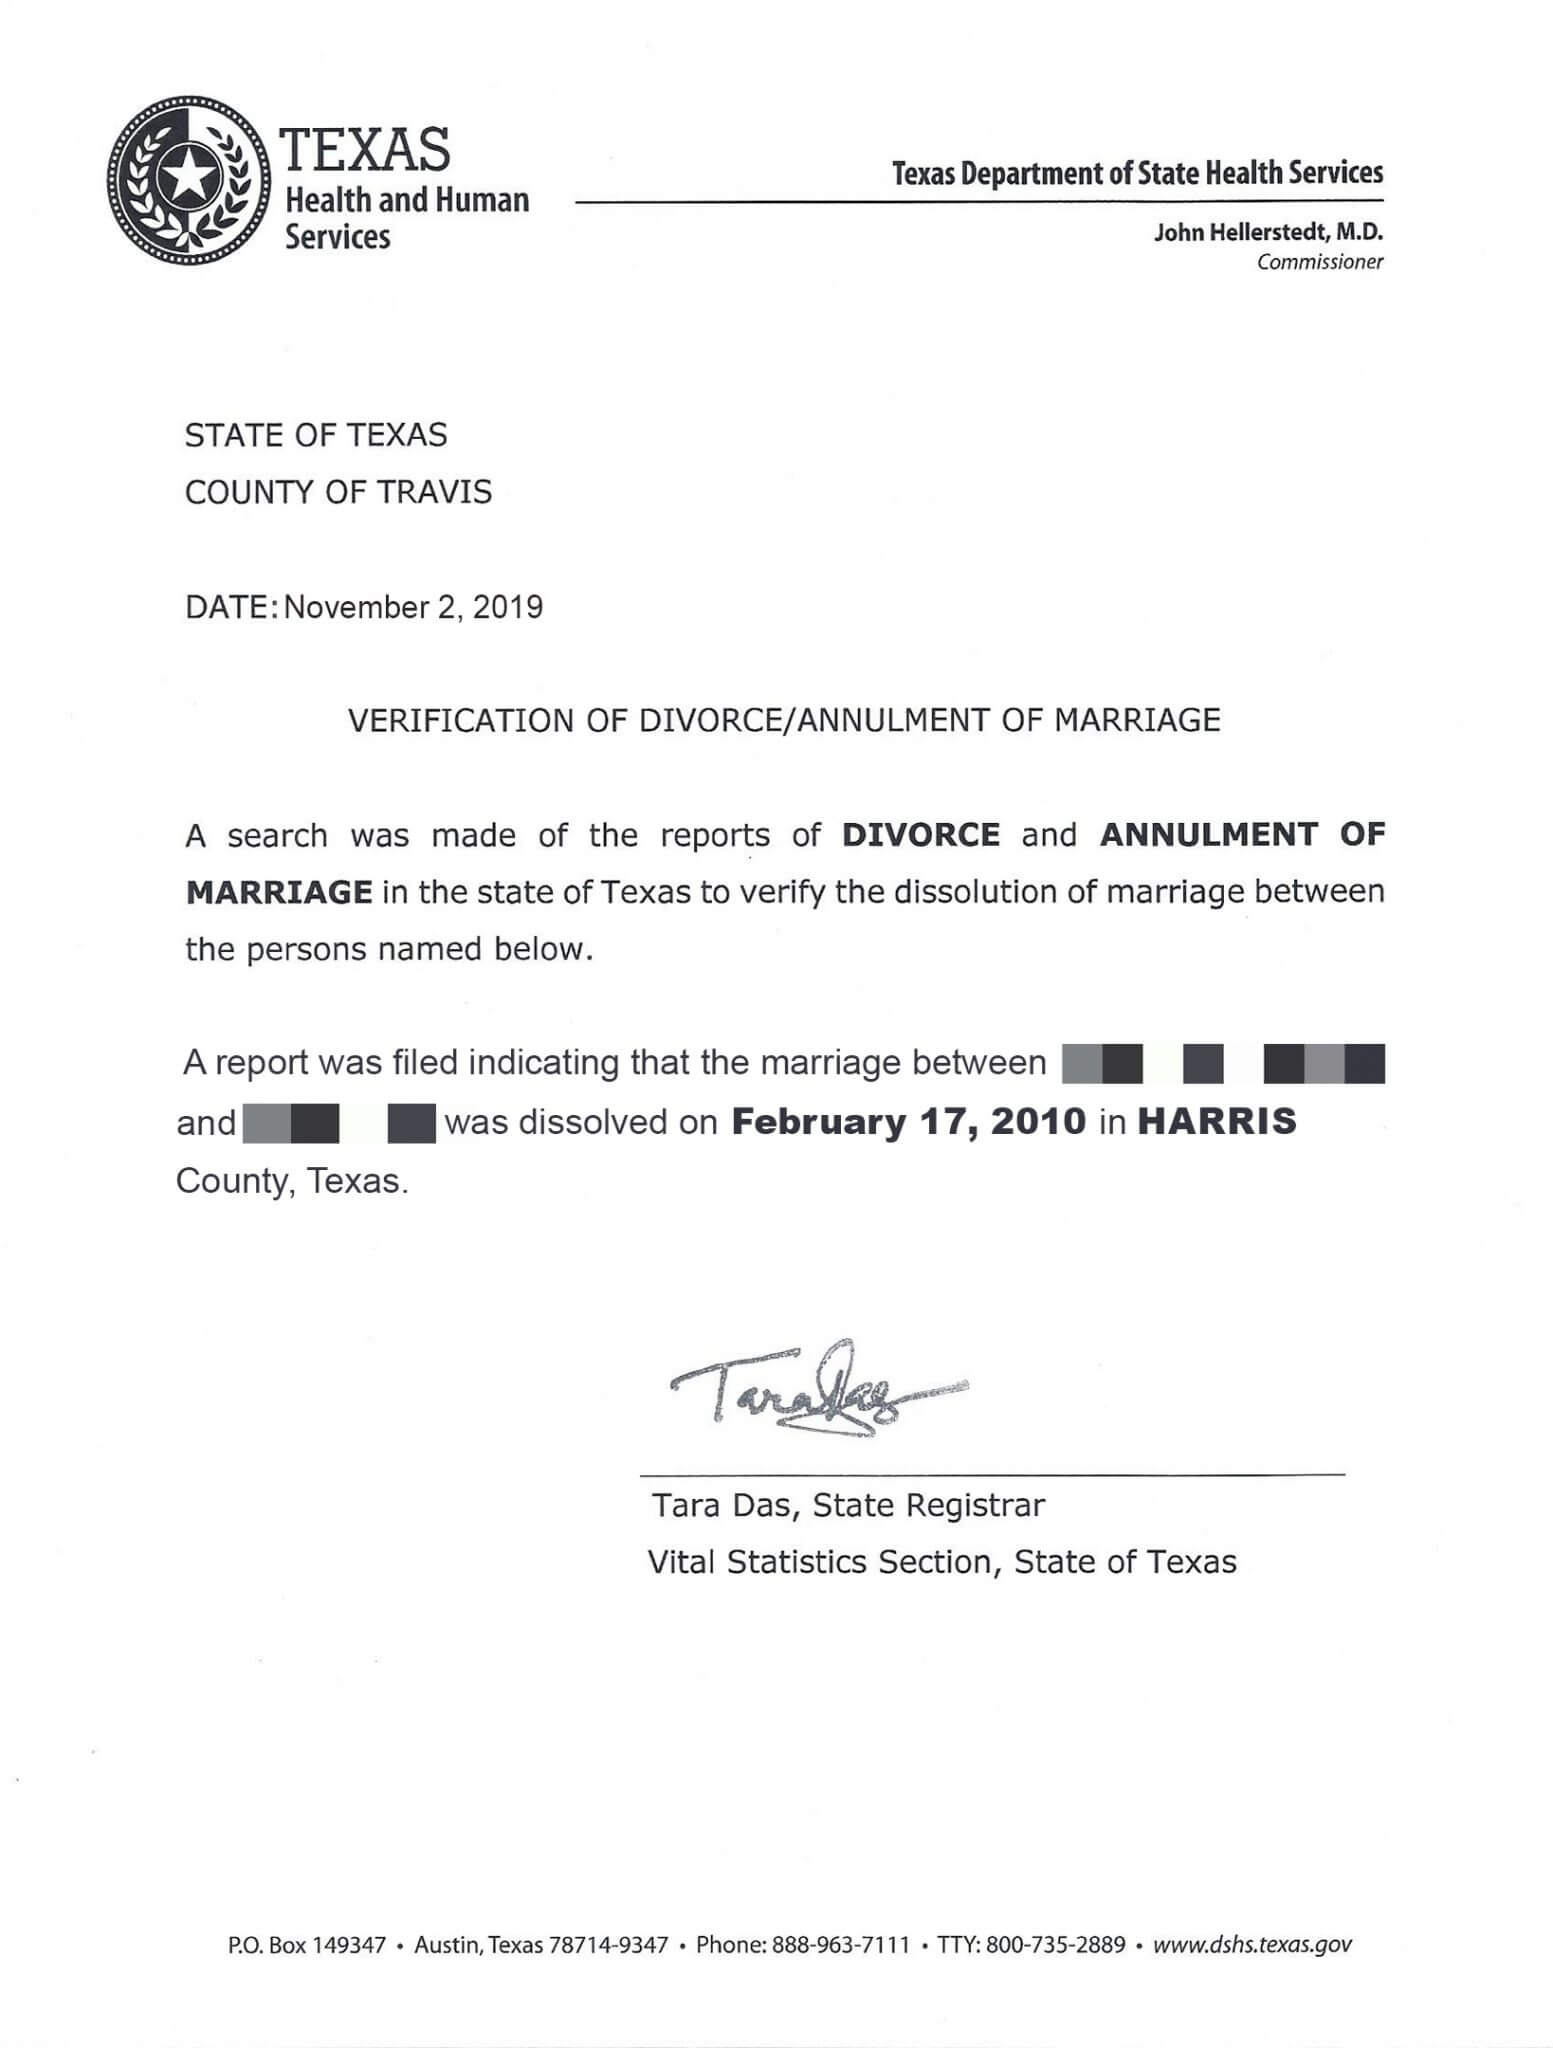 Texas divorce verification letter